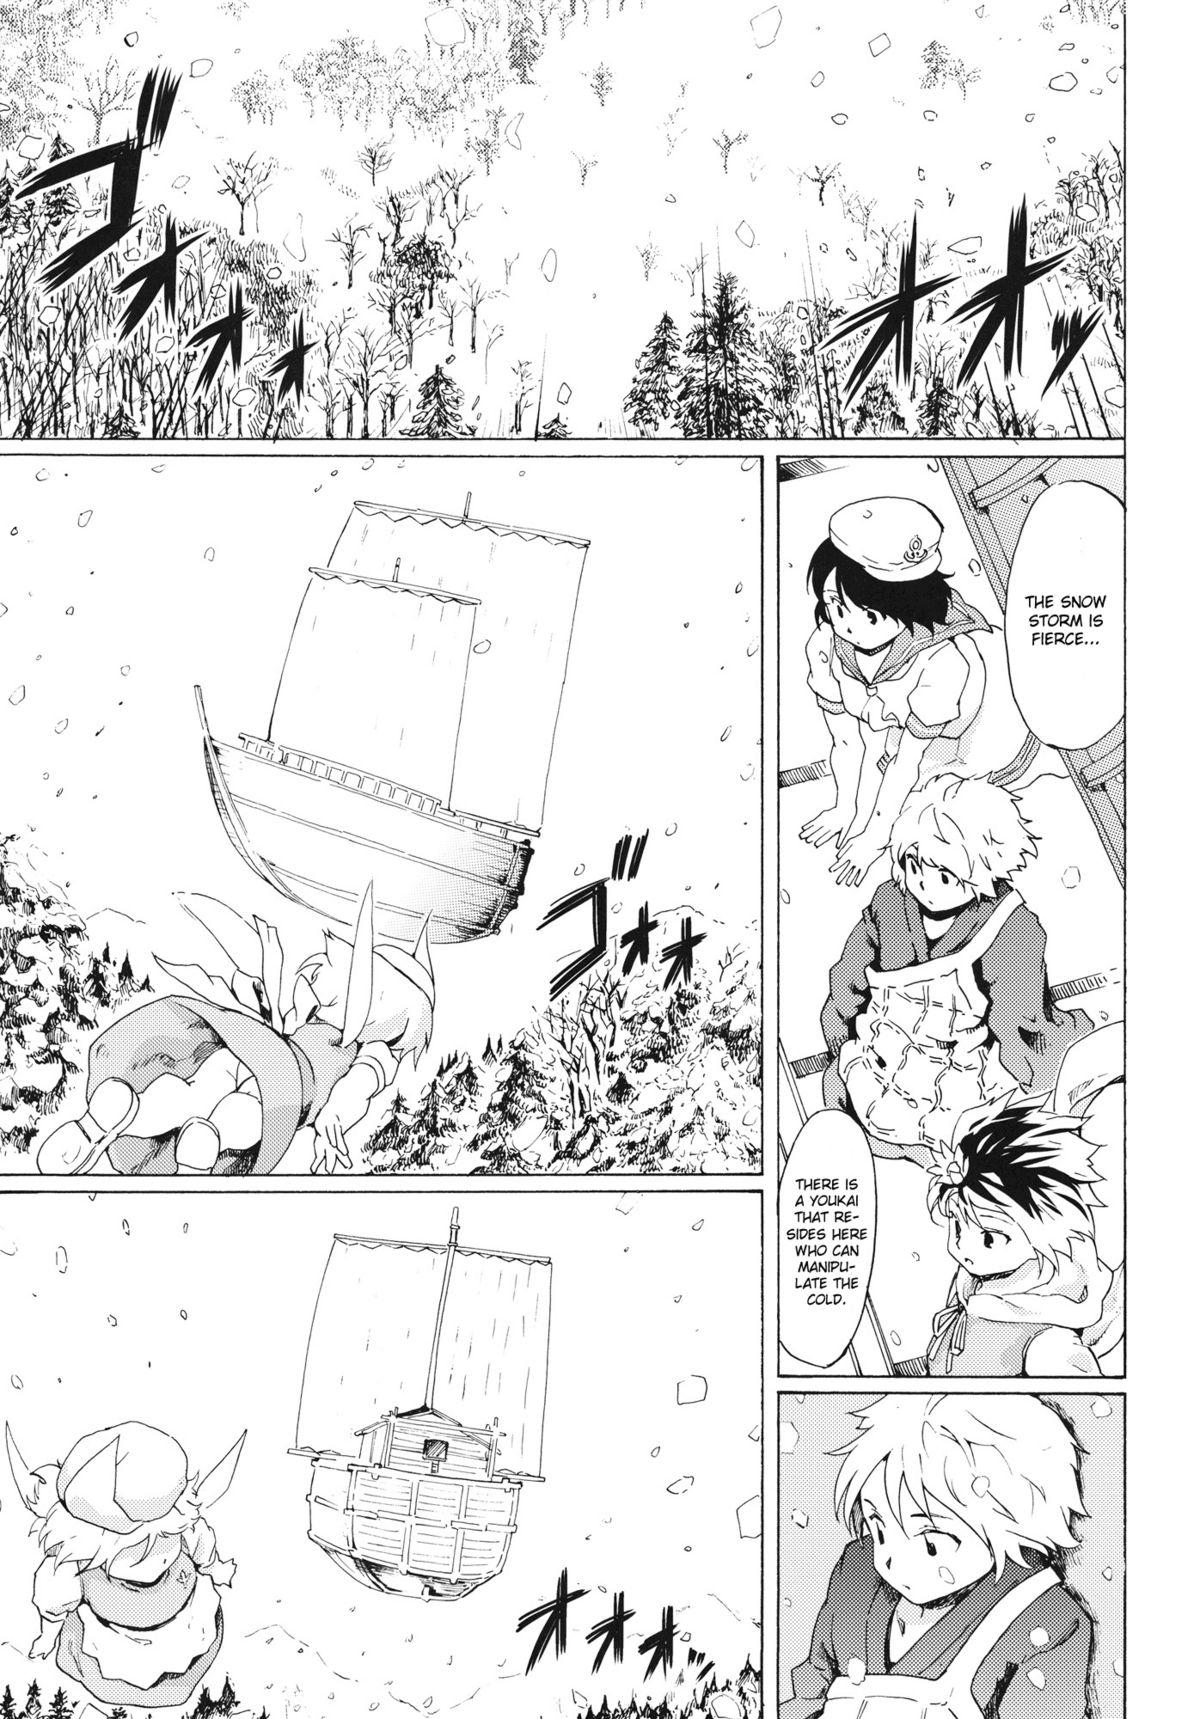 Butthole Touhou Ukiyo Emaki Seinaru Seinaru Fune no Kiseki no Kiseki 2 - Touhou project Deflowered - Page 2